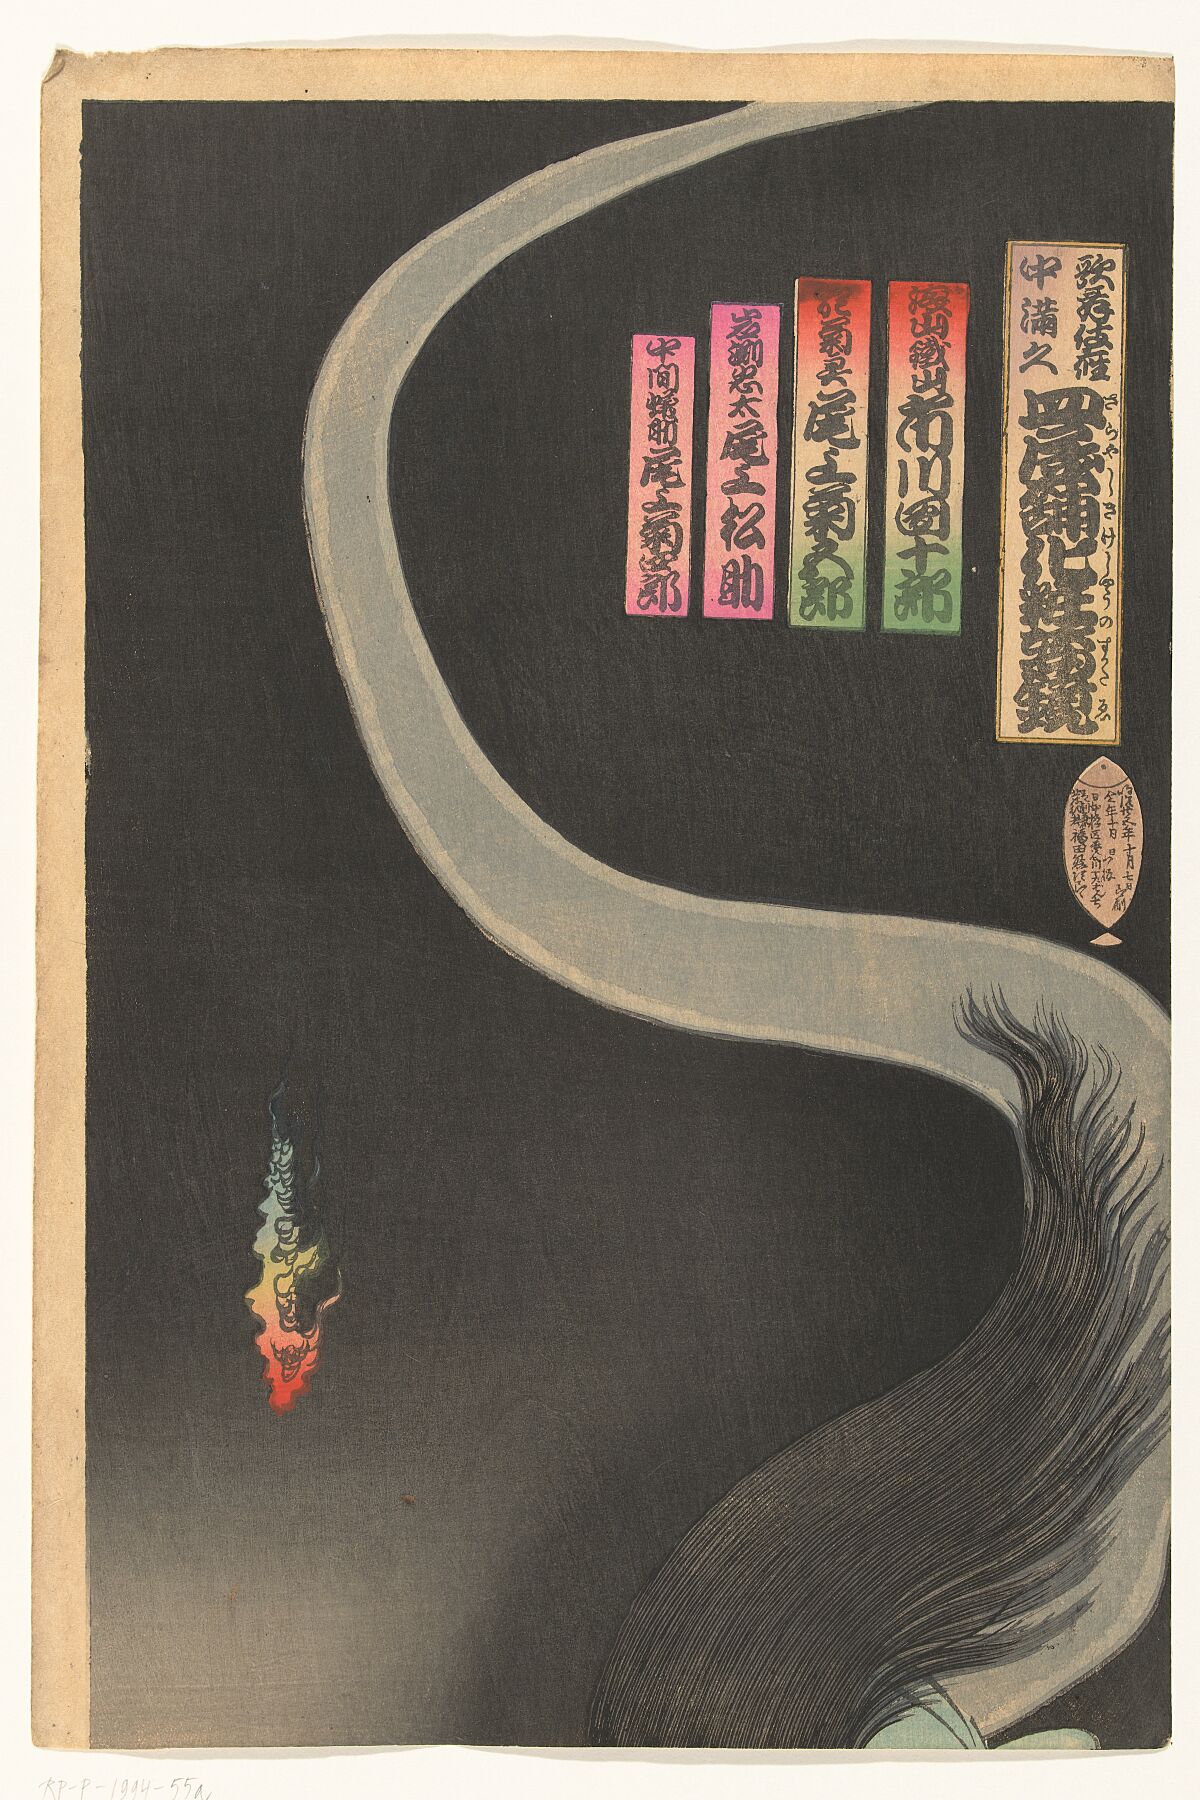 Samurai Aoyama and the Ghost Okiku, Toyohara Kunichika, 1892